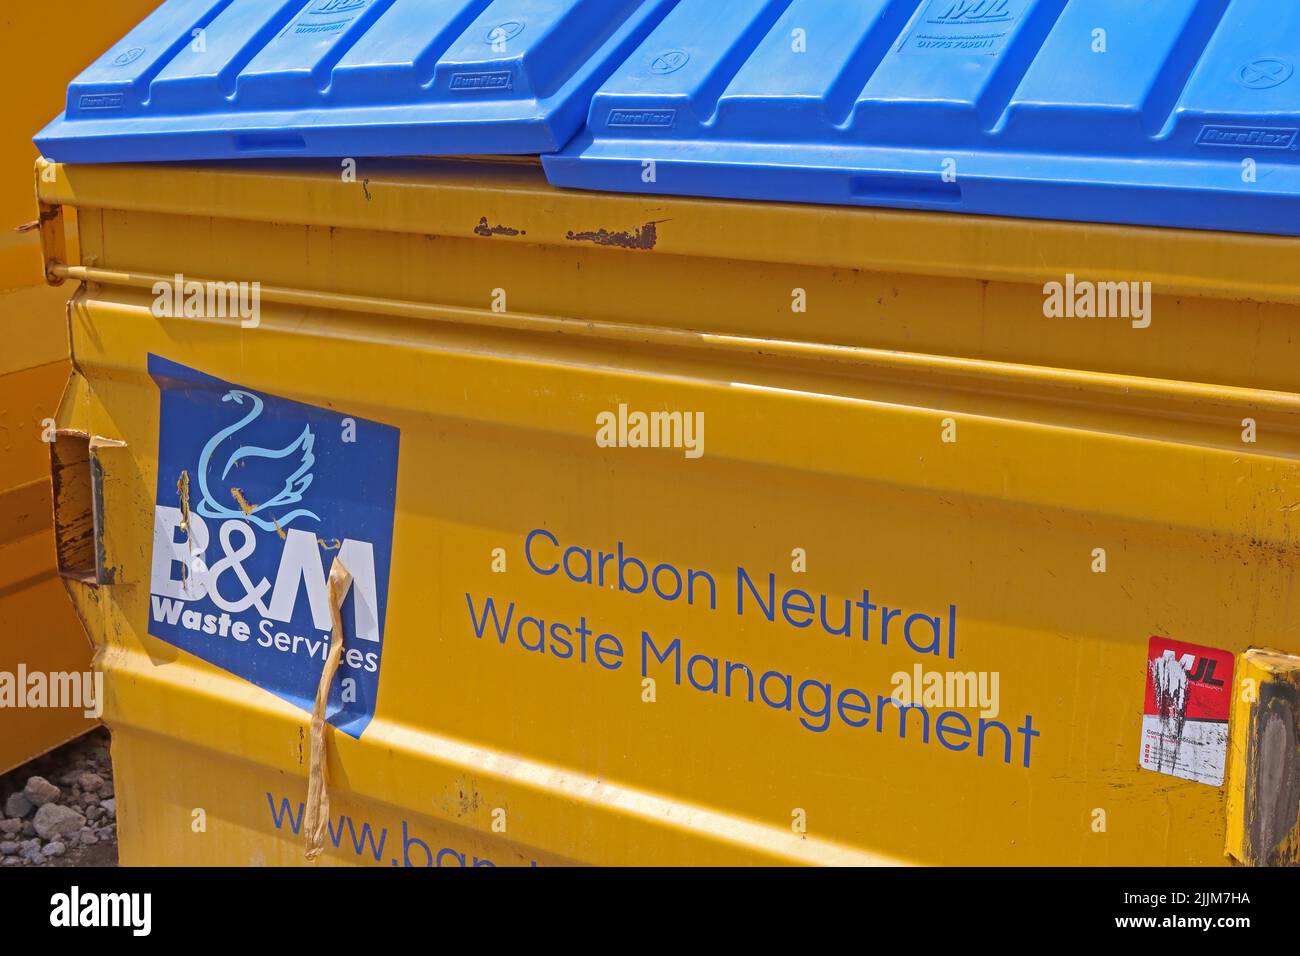 Services de gestion des déchets B&M - gestion des déchets neutres en carbone - ignorer. Les entreprises peuvent-elles vraiment être neutres en carbone ? Banque D'Images